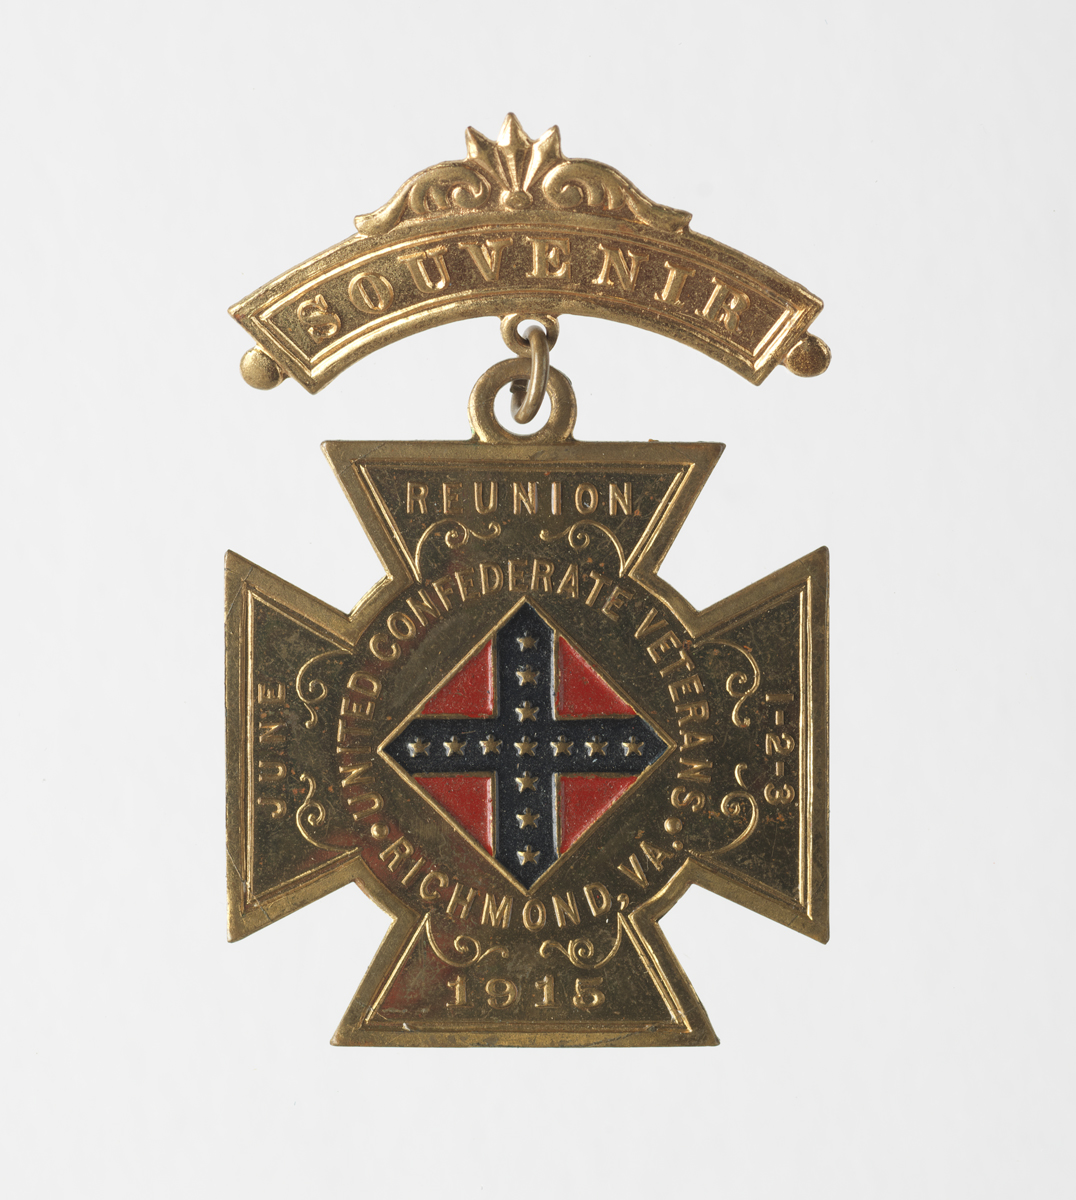 United Confederate Veteran reunion badge, 1906–1932, 1989.32.41